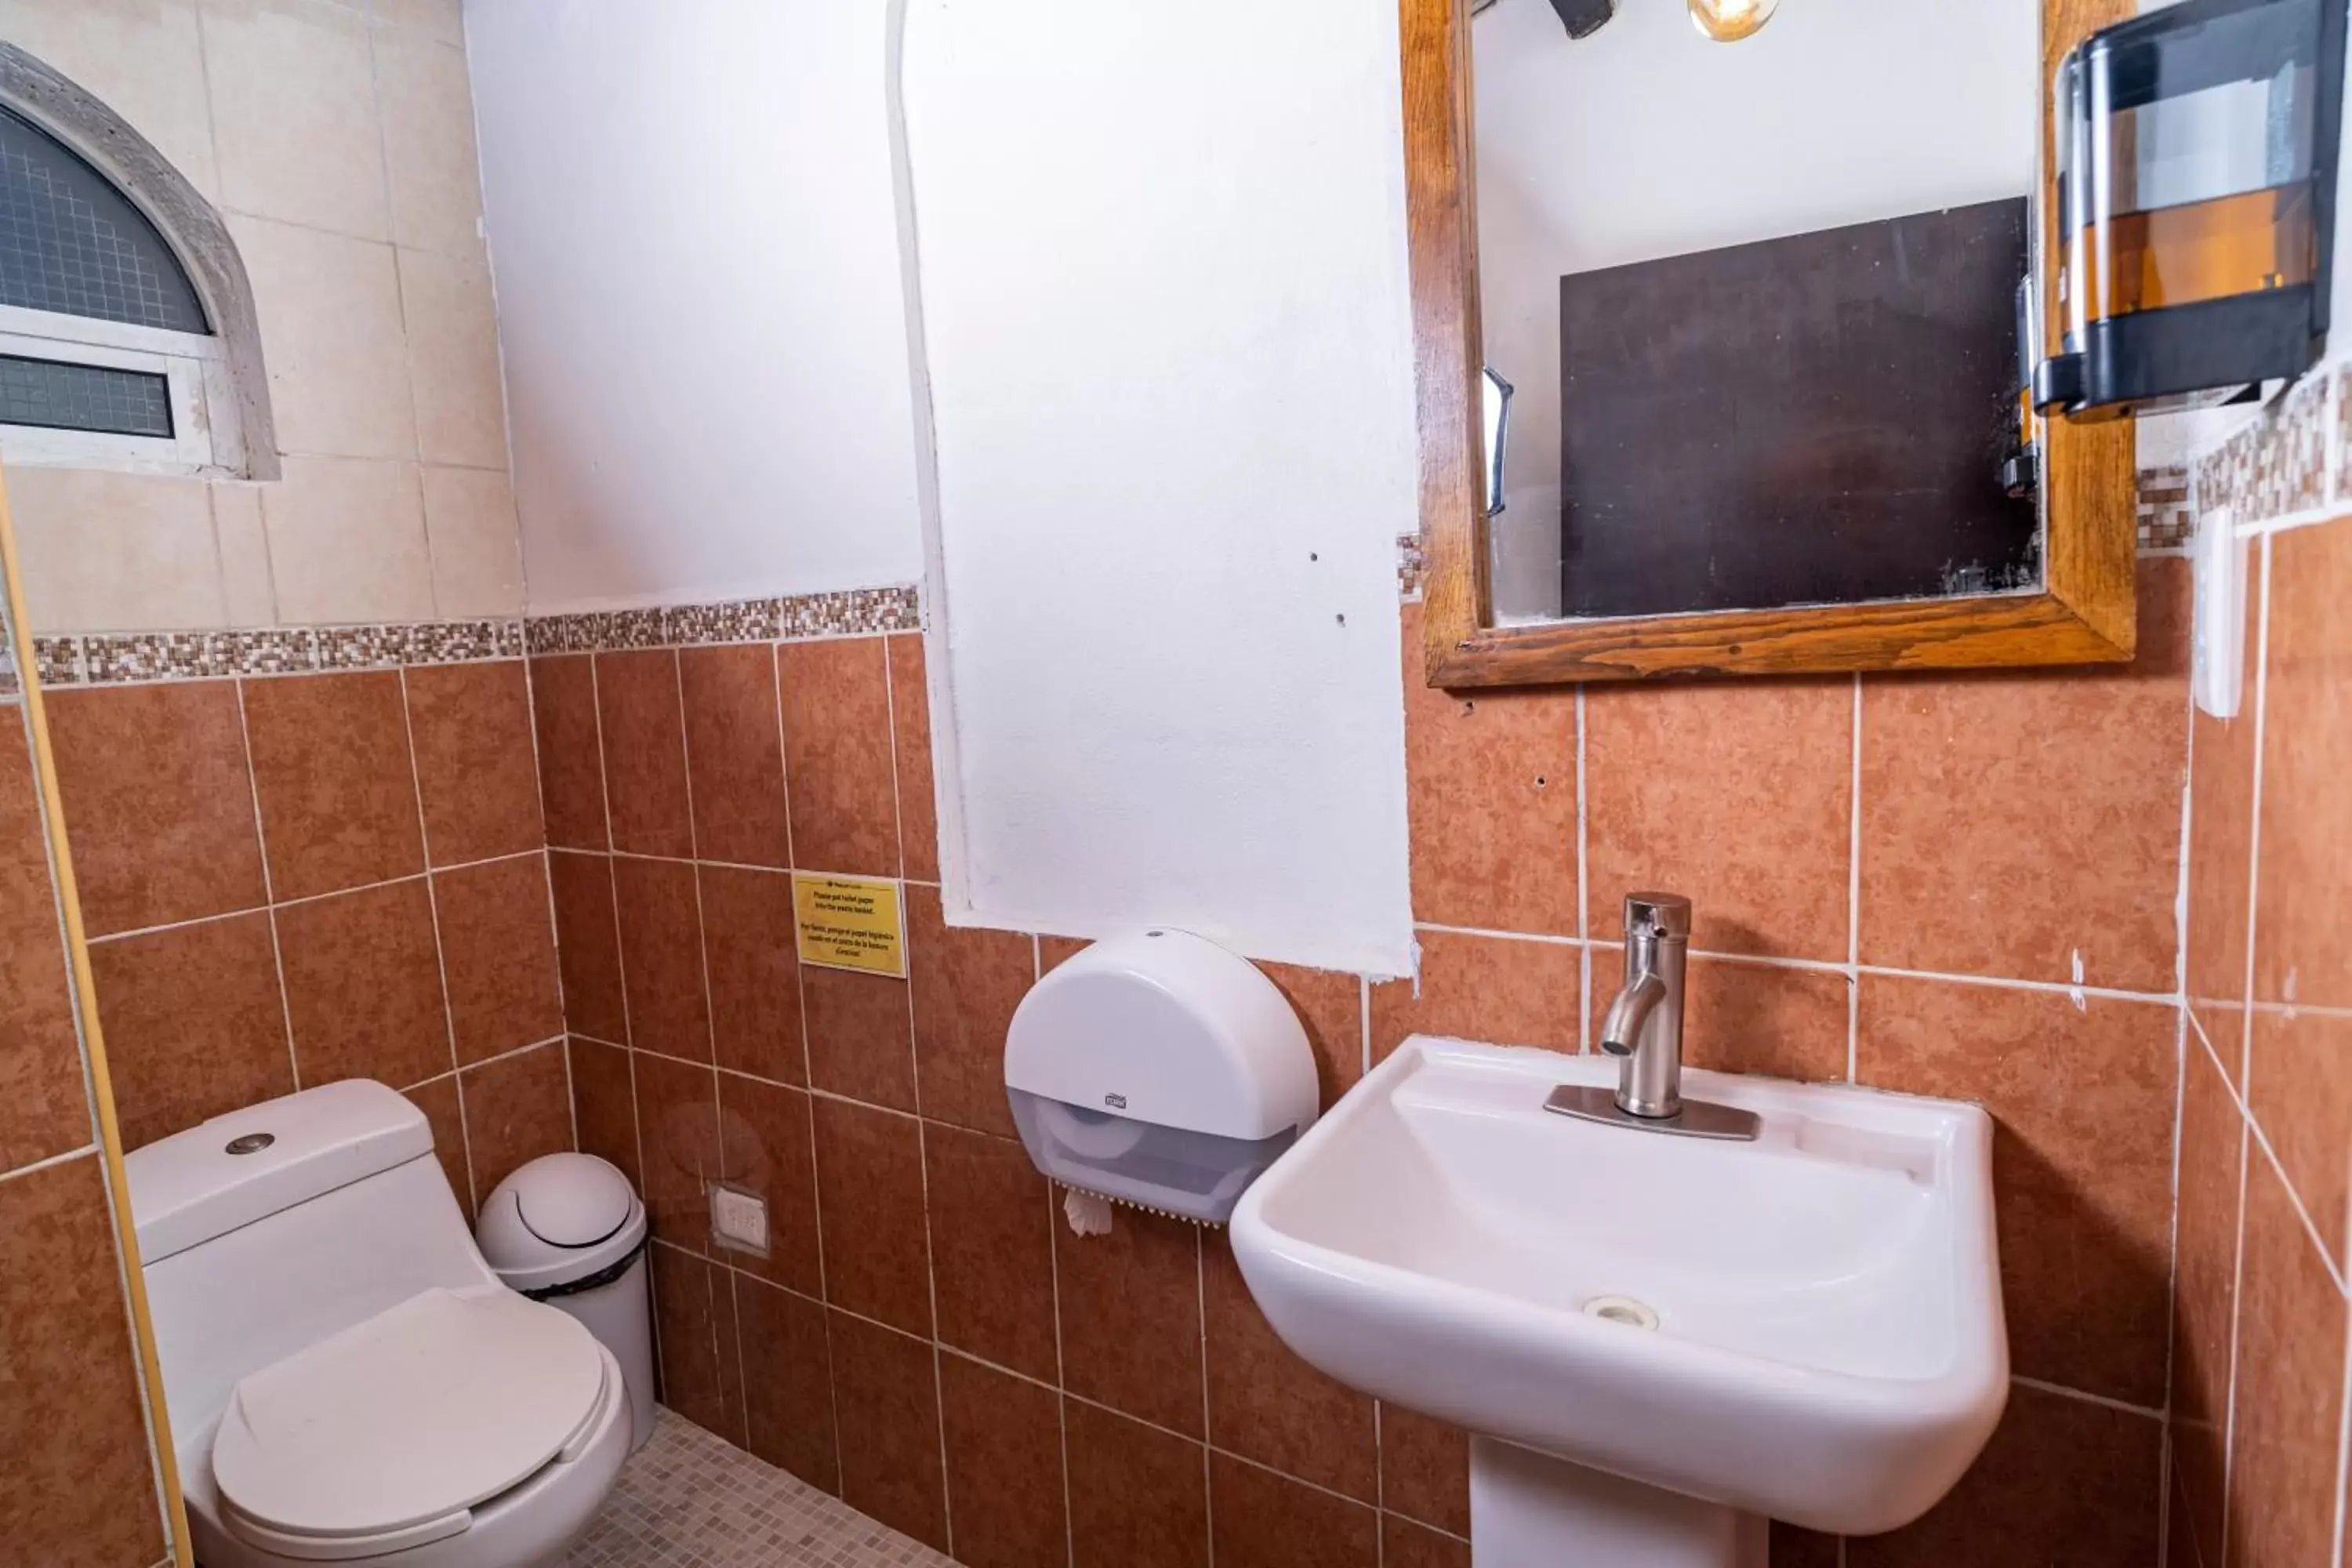 Bathroom in Mezcal Hostel